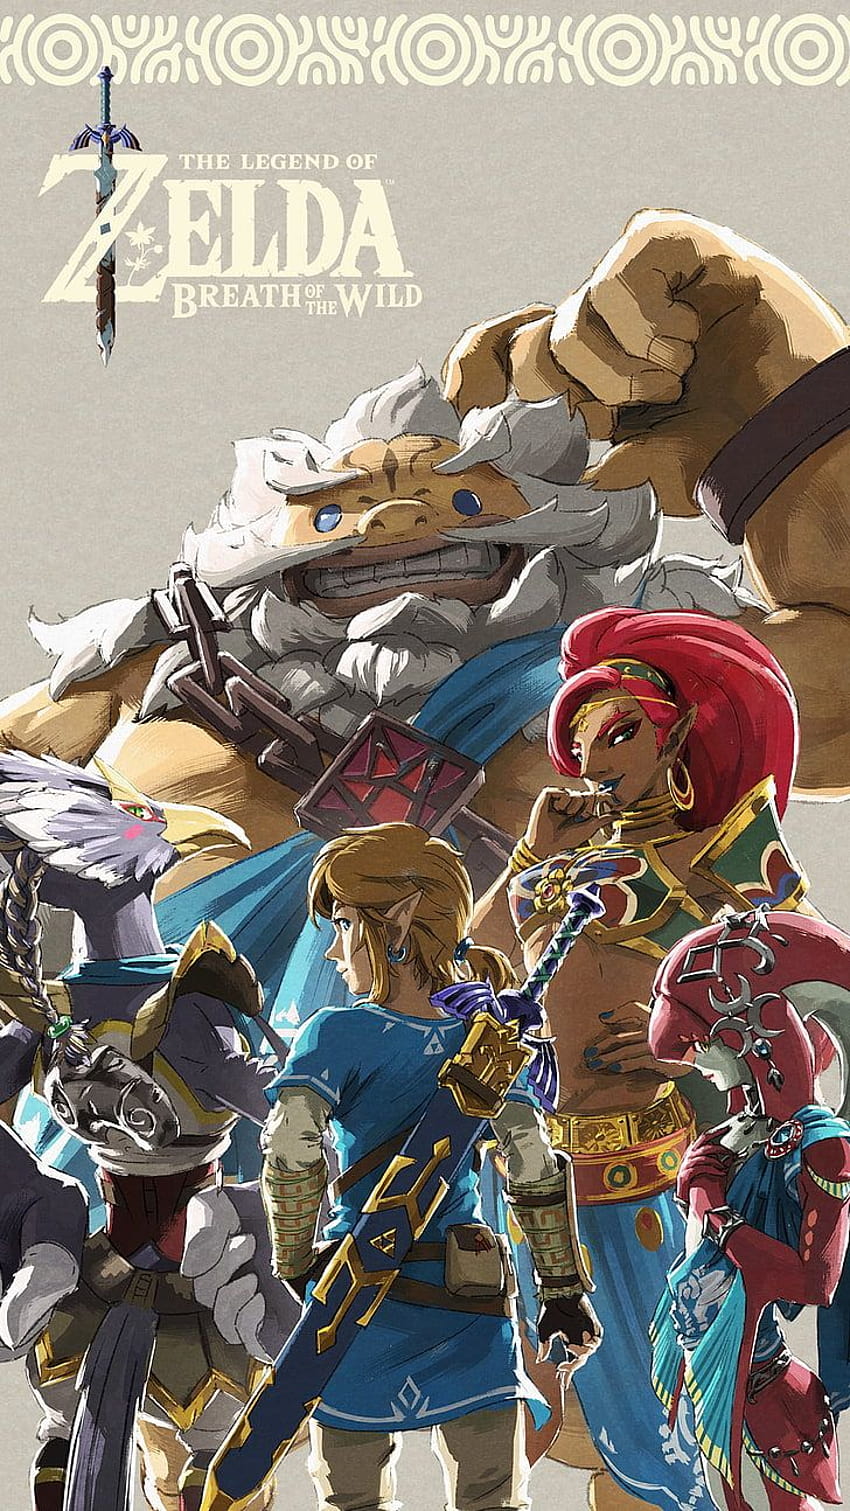 Mipha, Sidon, die Legende von Zelda, Atem der Wildnis HD-Handy-Hintergrundbild